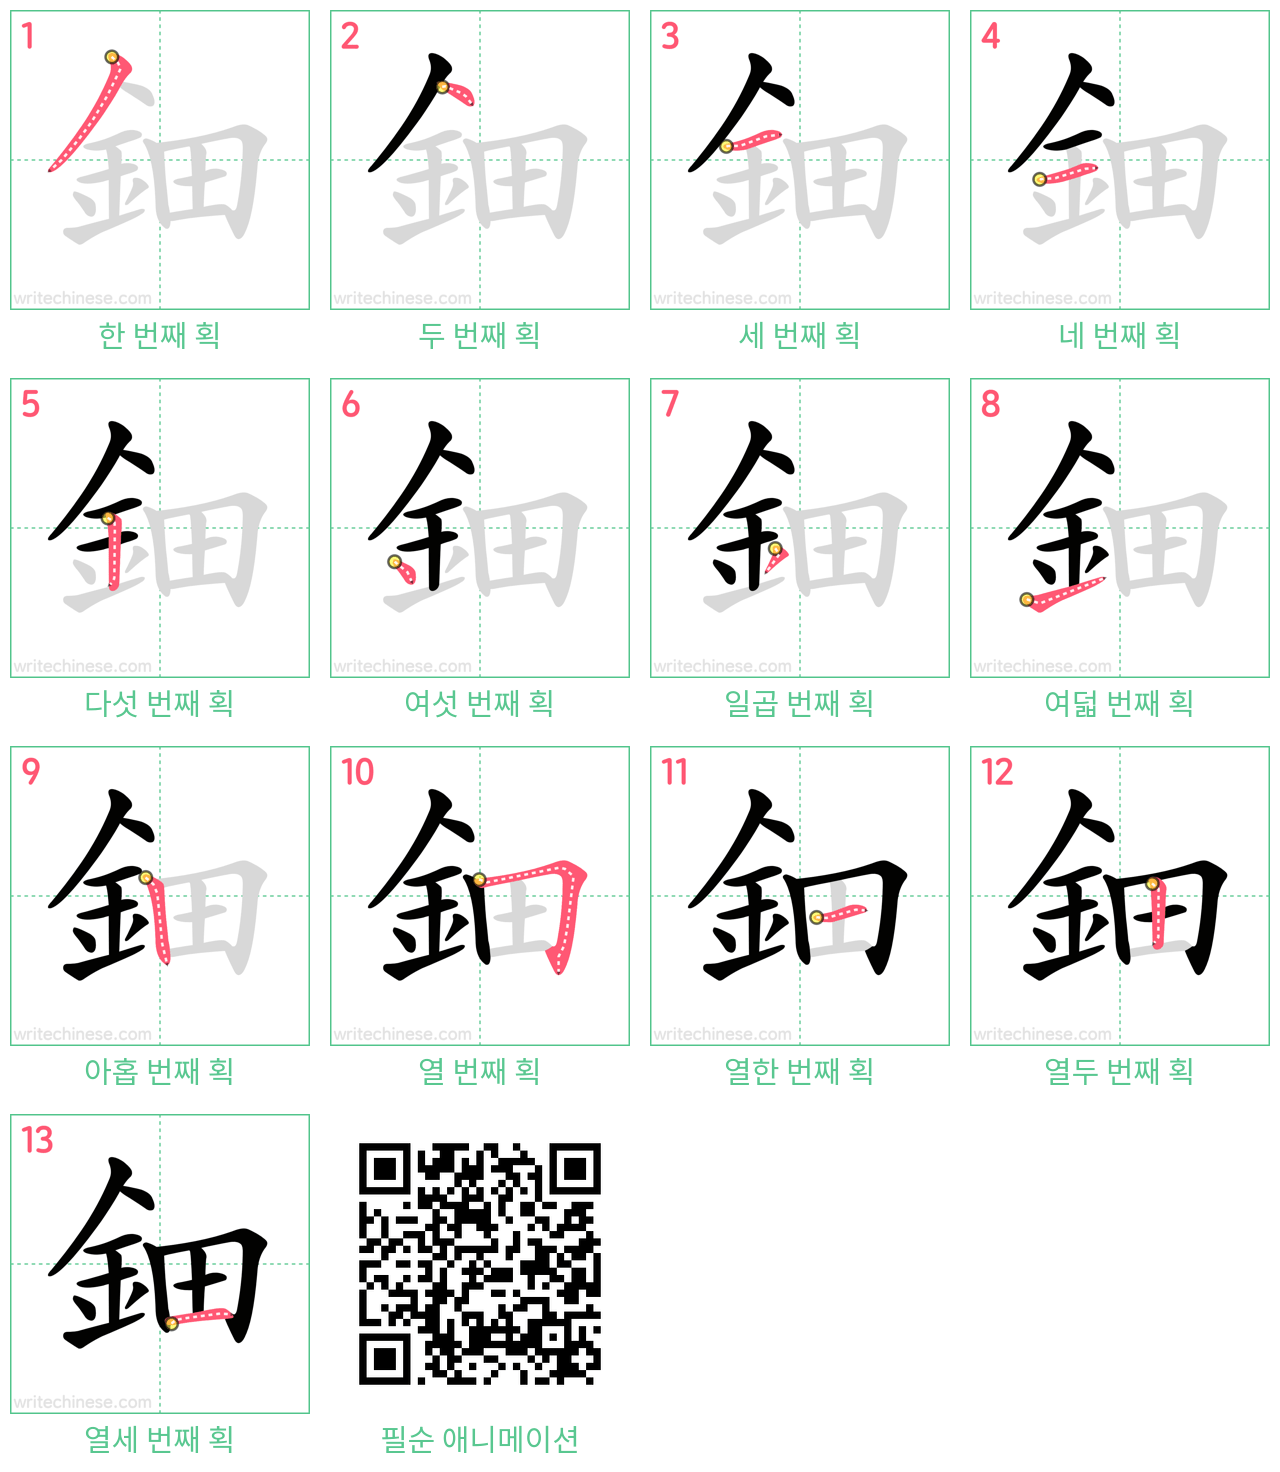 鈿 step-by-step stroke order diagrams